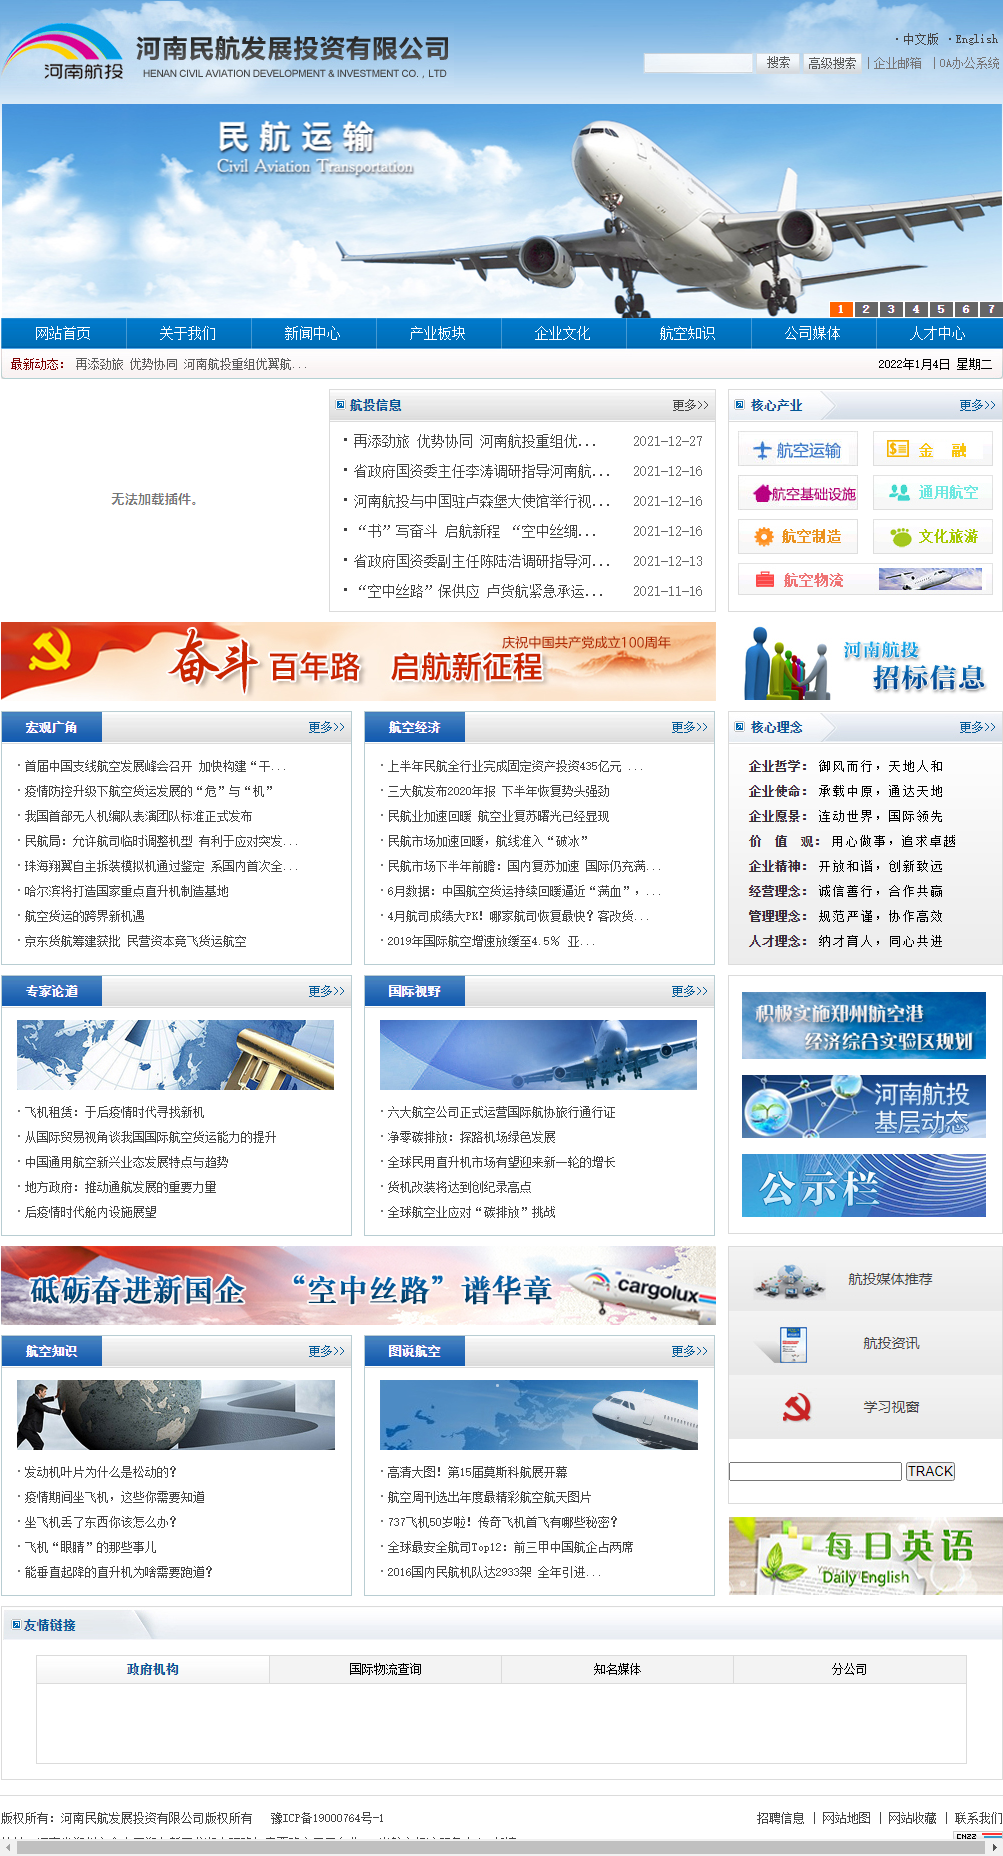 河南民航发展投资有限公司网站案例